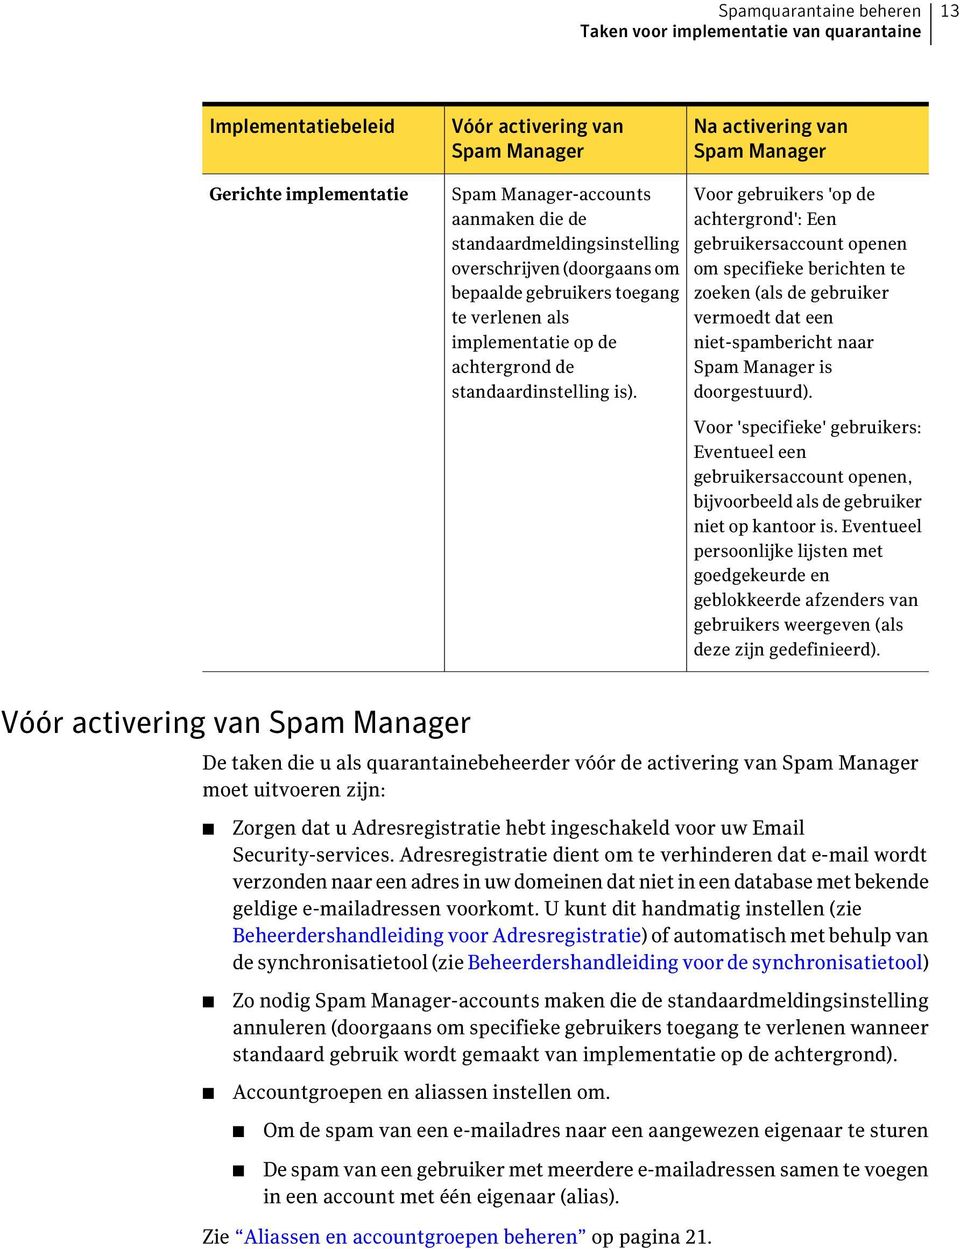 Voor gebruikers 'op de achtergrond': Een gebruikersaccount openen om specifieke berichten te zoeken (als de gebruiker vermoedt dat een niet-spambericht naar Spam Manager is doorgestuurd).